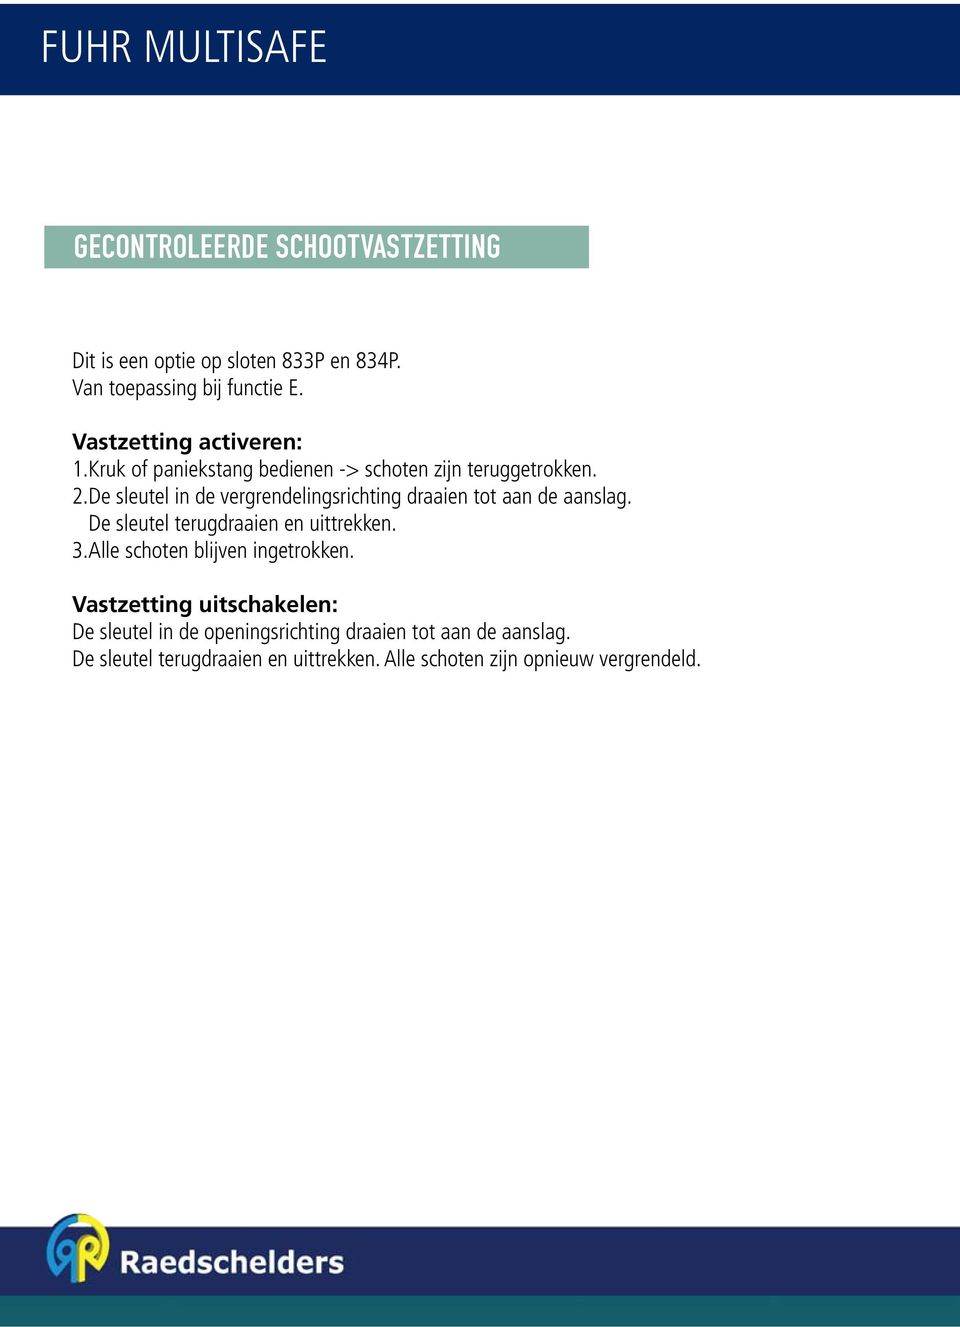 Raedschelders Bouwbeslag Partners. FUHR Anti-paniek RAAM- & DEURBESLAG -  PDF Free Download